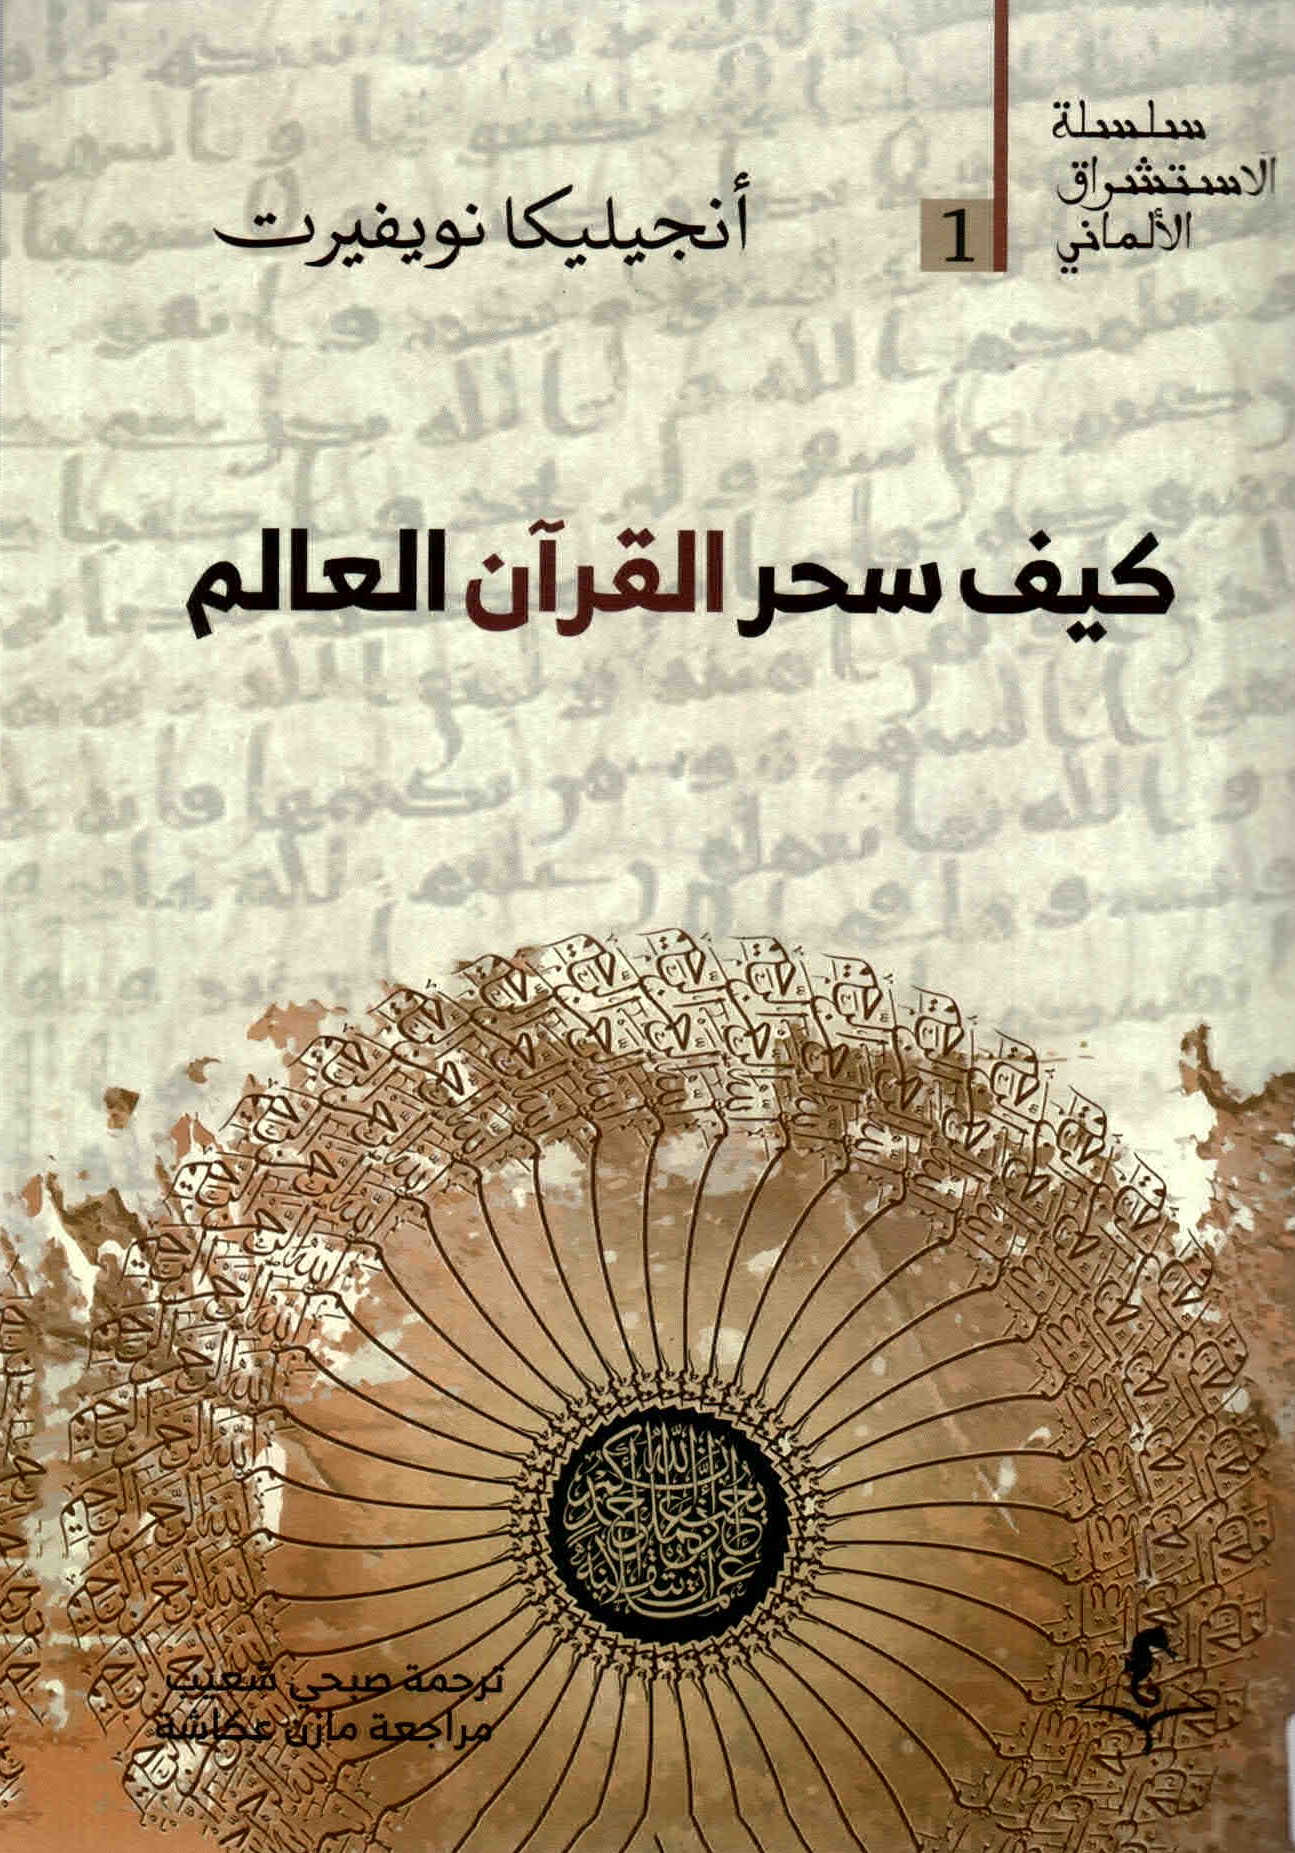 غلاف كتاب "كيف سحر القرآن العالم لأنجسلسكا نويفيرت"